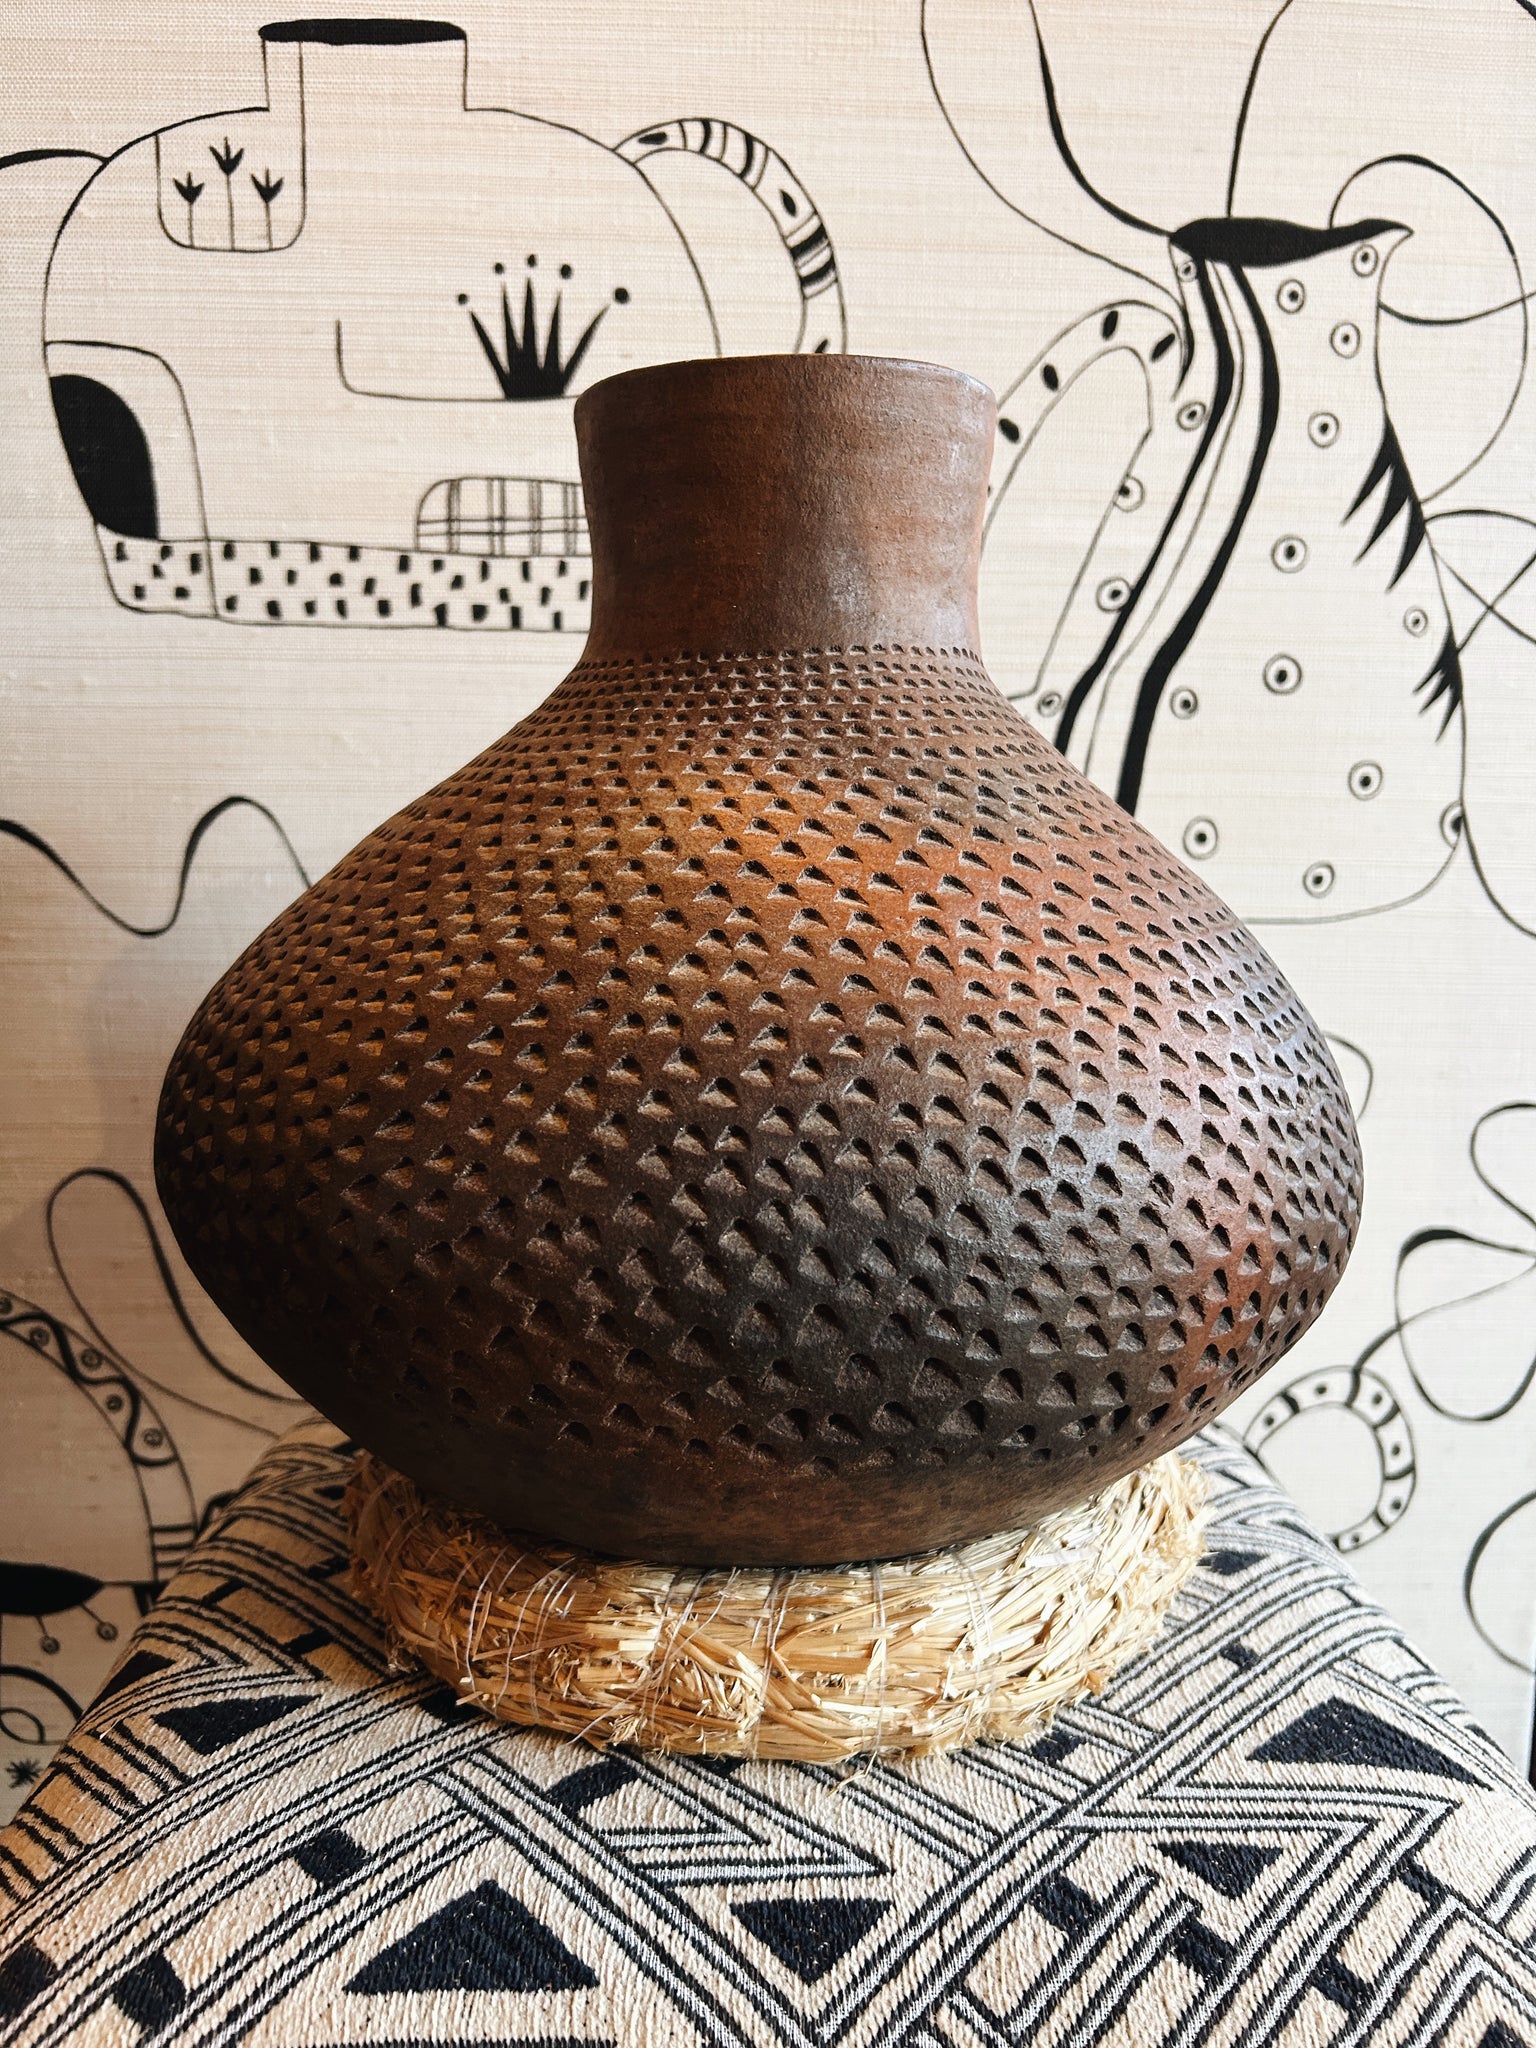 Ceremonial vase from Ghana